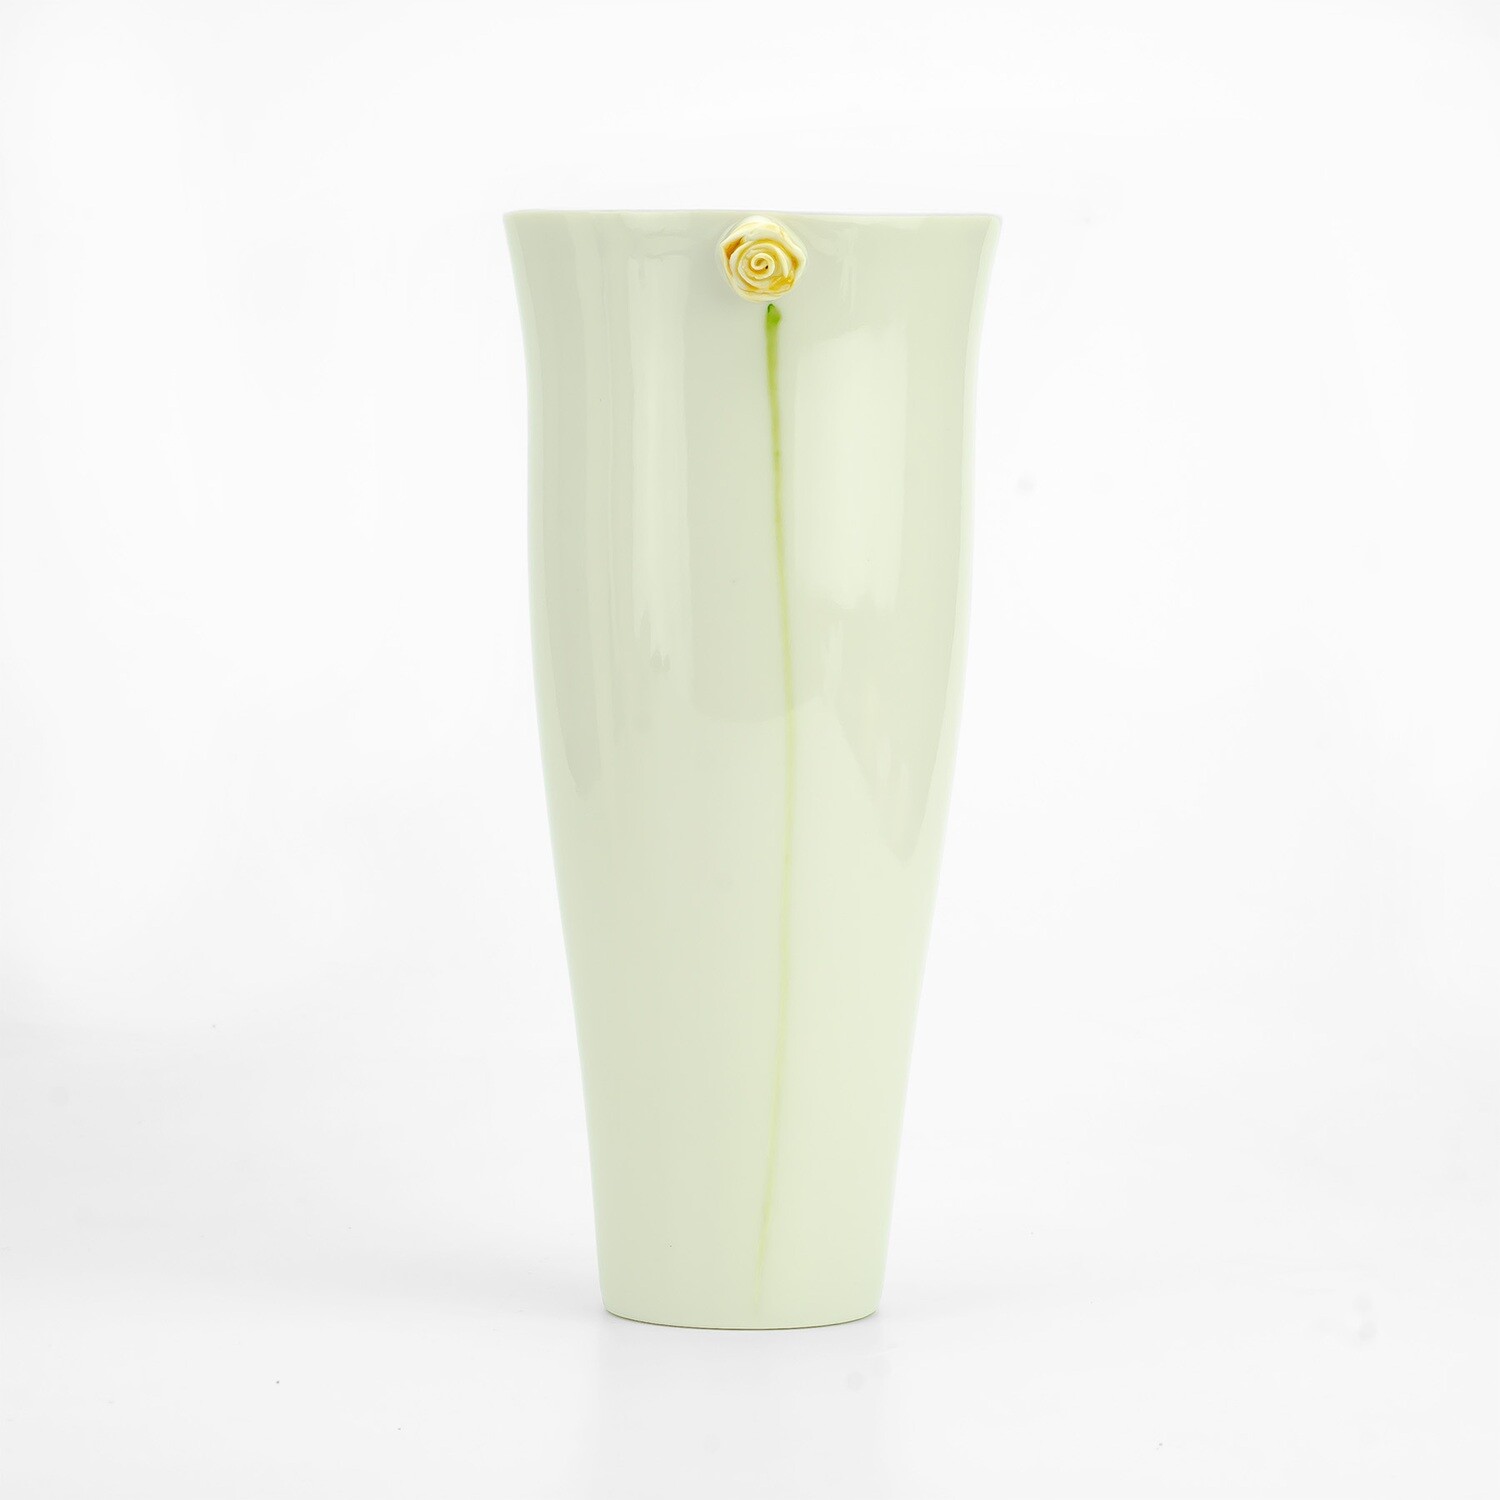 Vase Florentine modellierte Ranunkel gelb